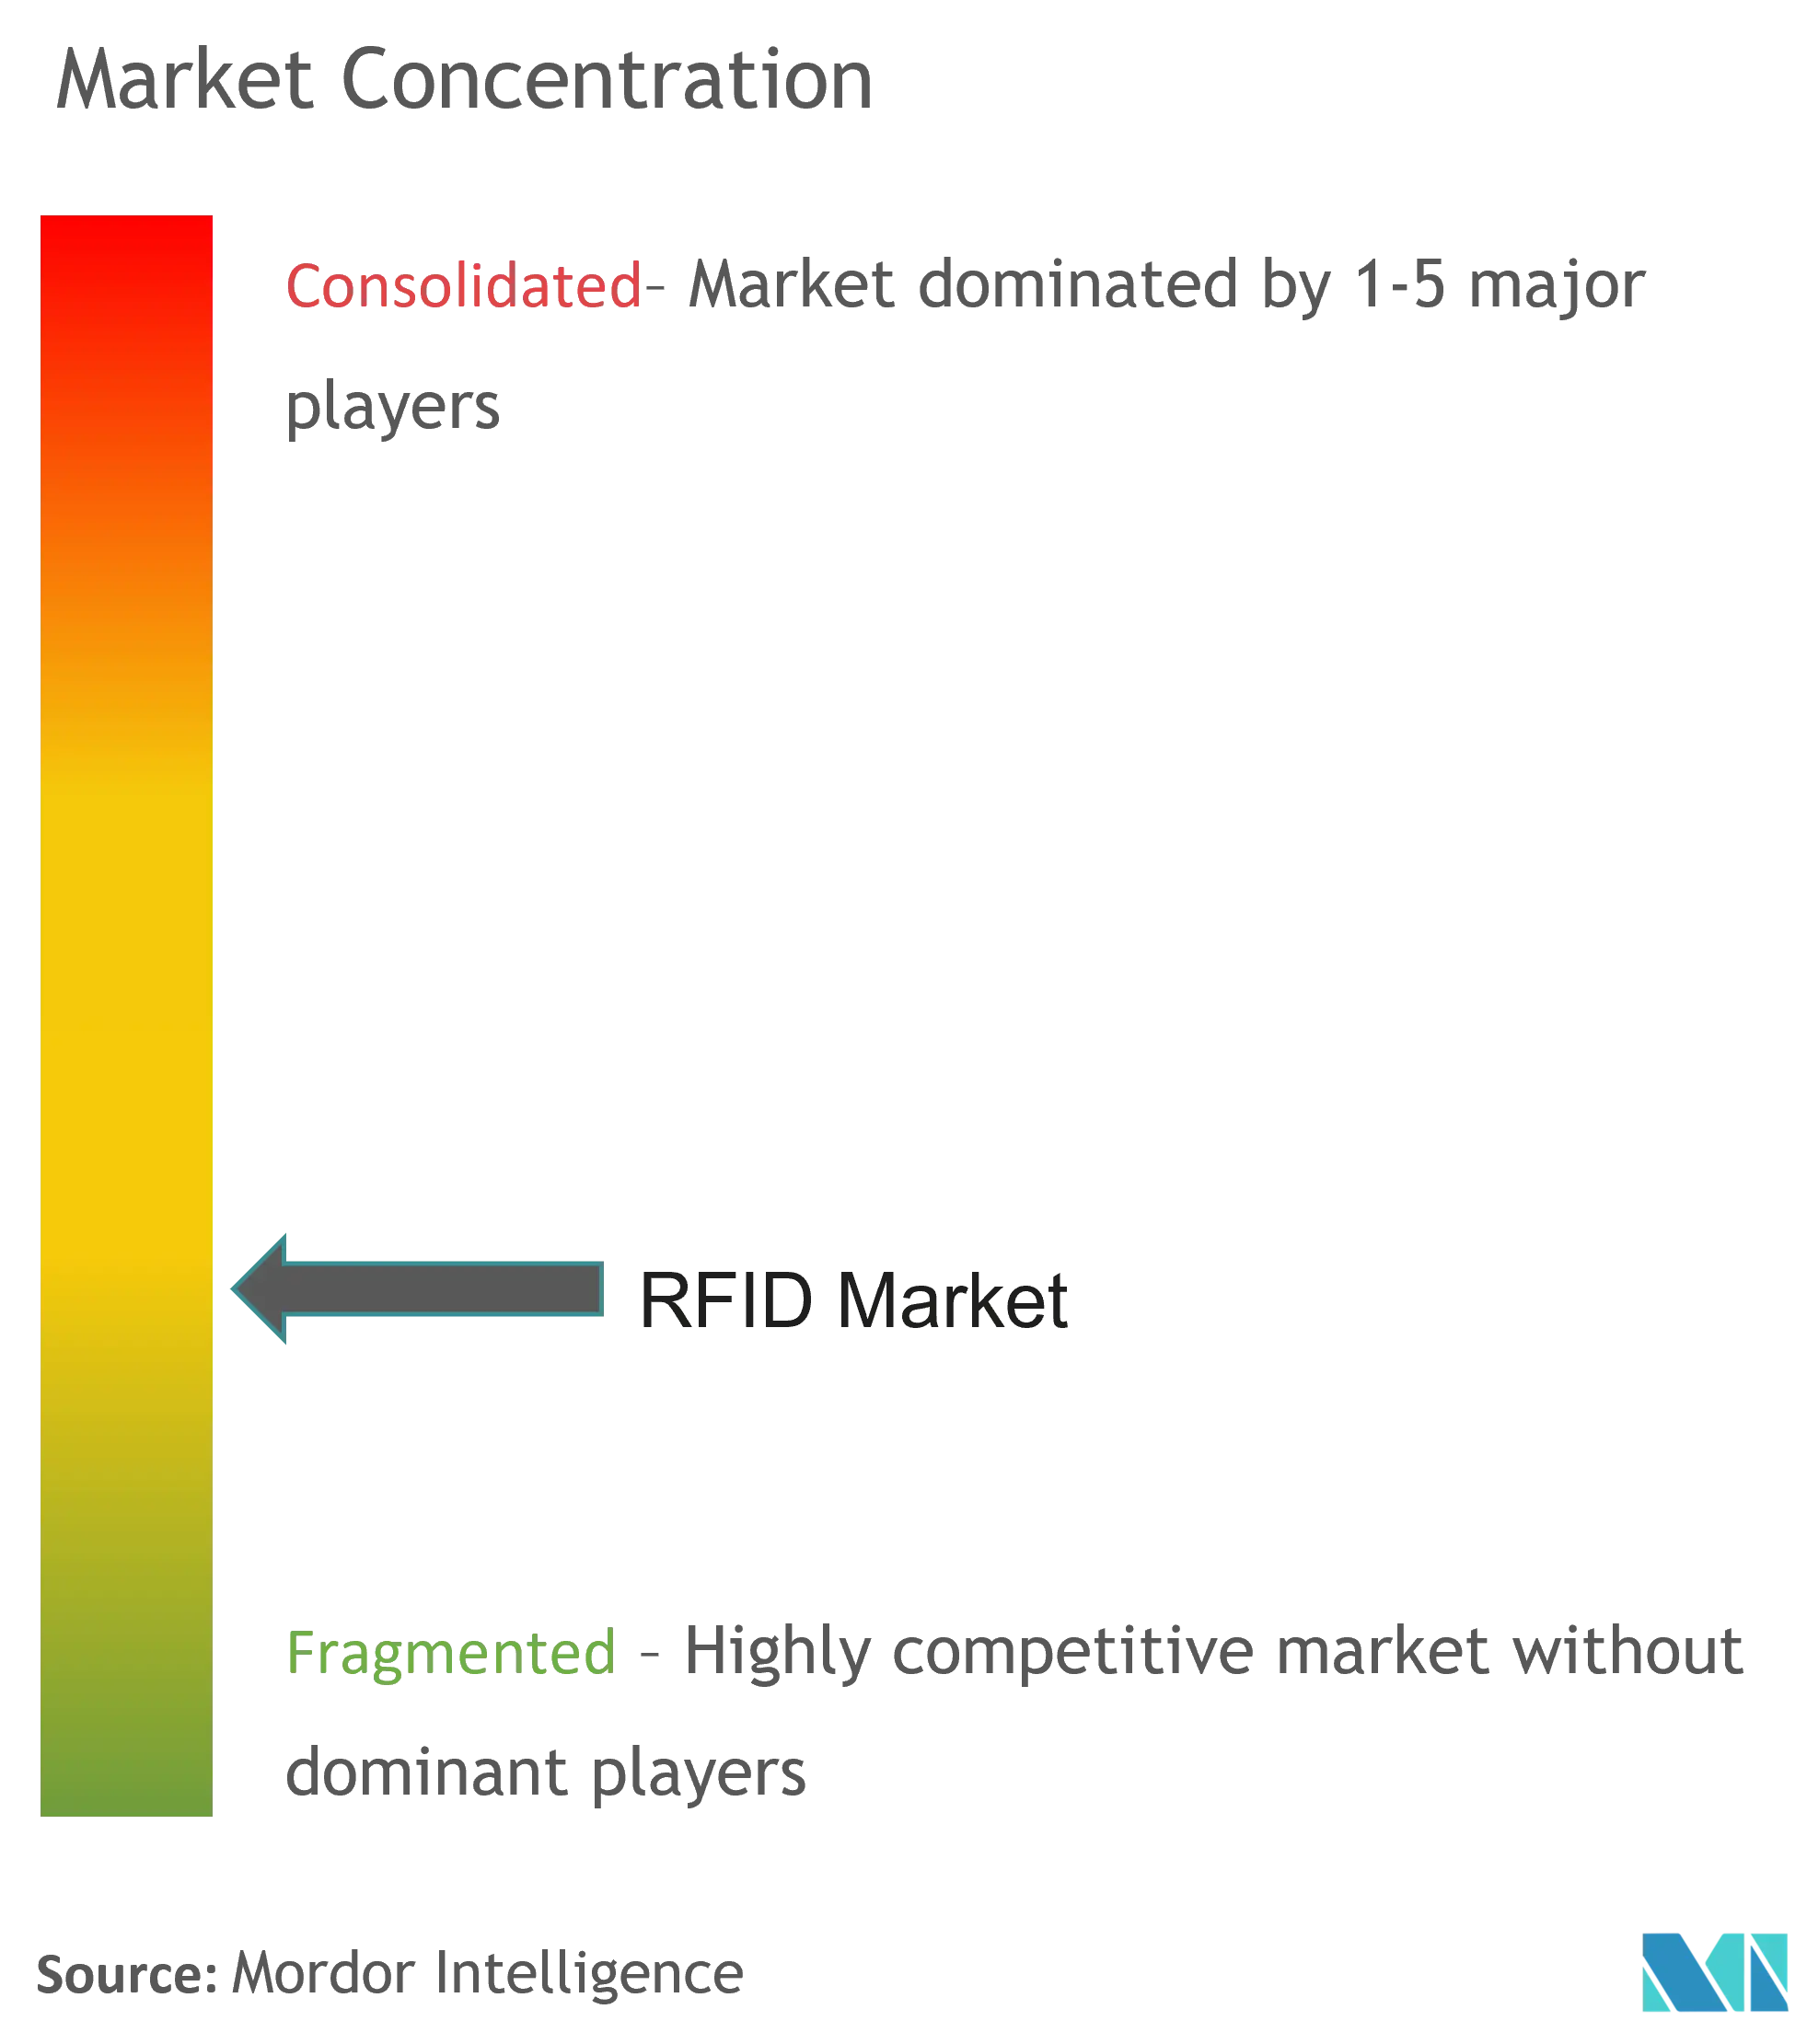 RFID Market - Market Concentration.png